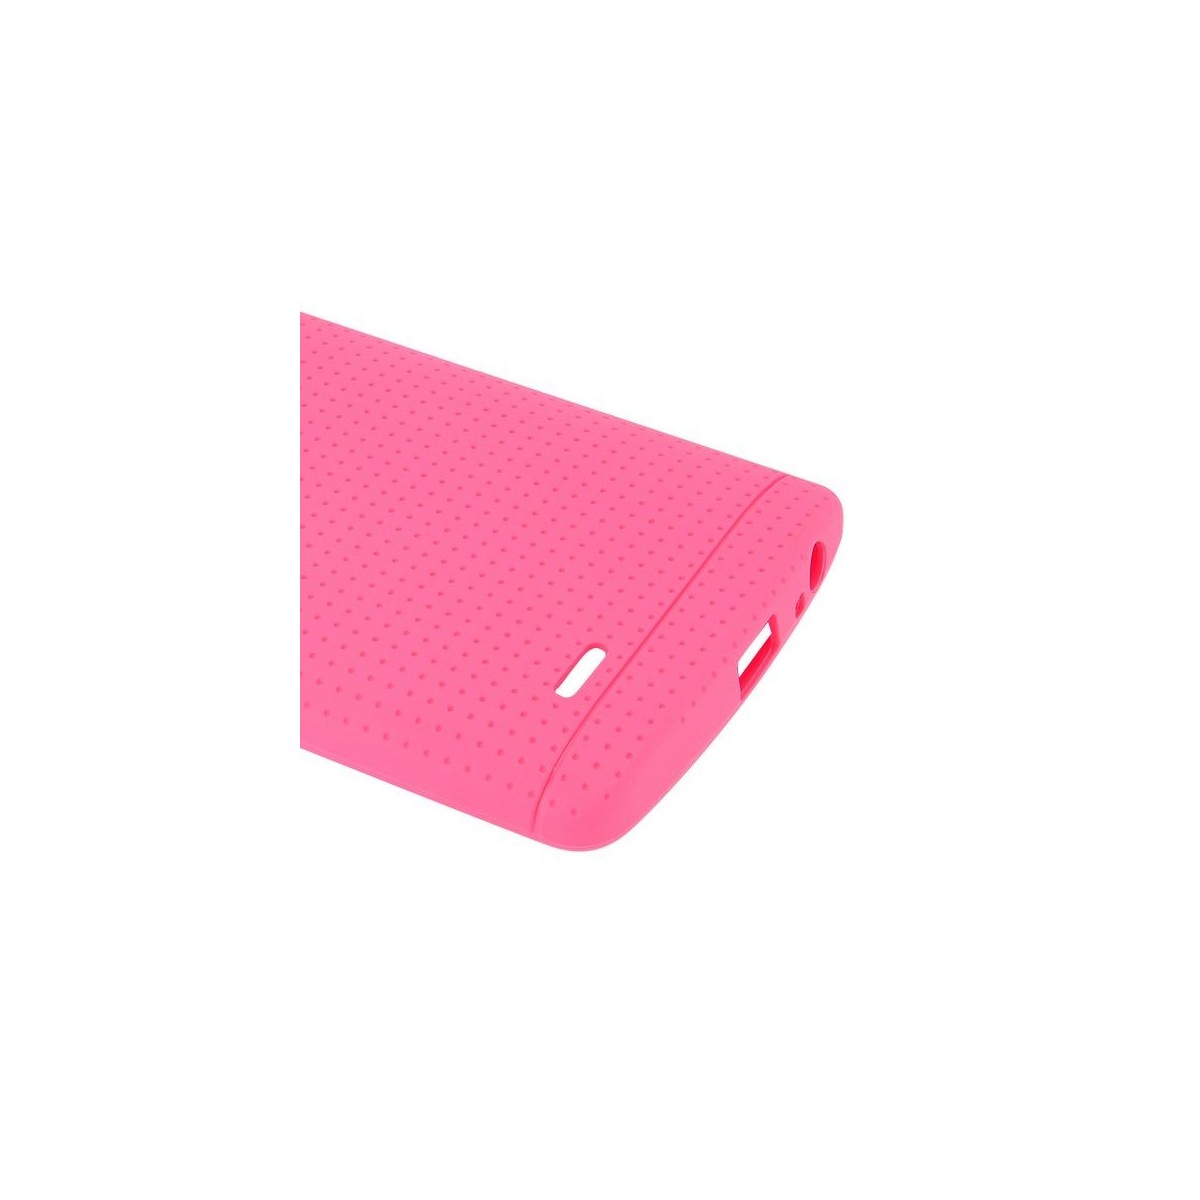 Crazy Kase - Coque LG G4 en TPU Rose